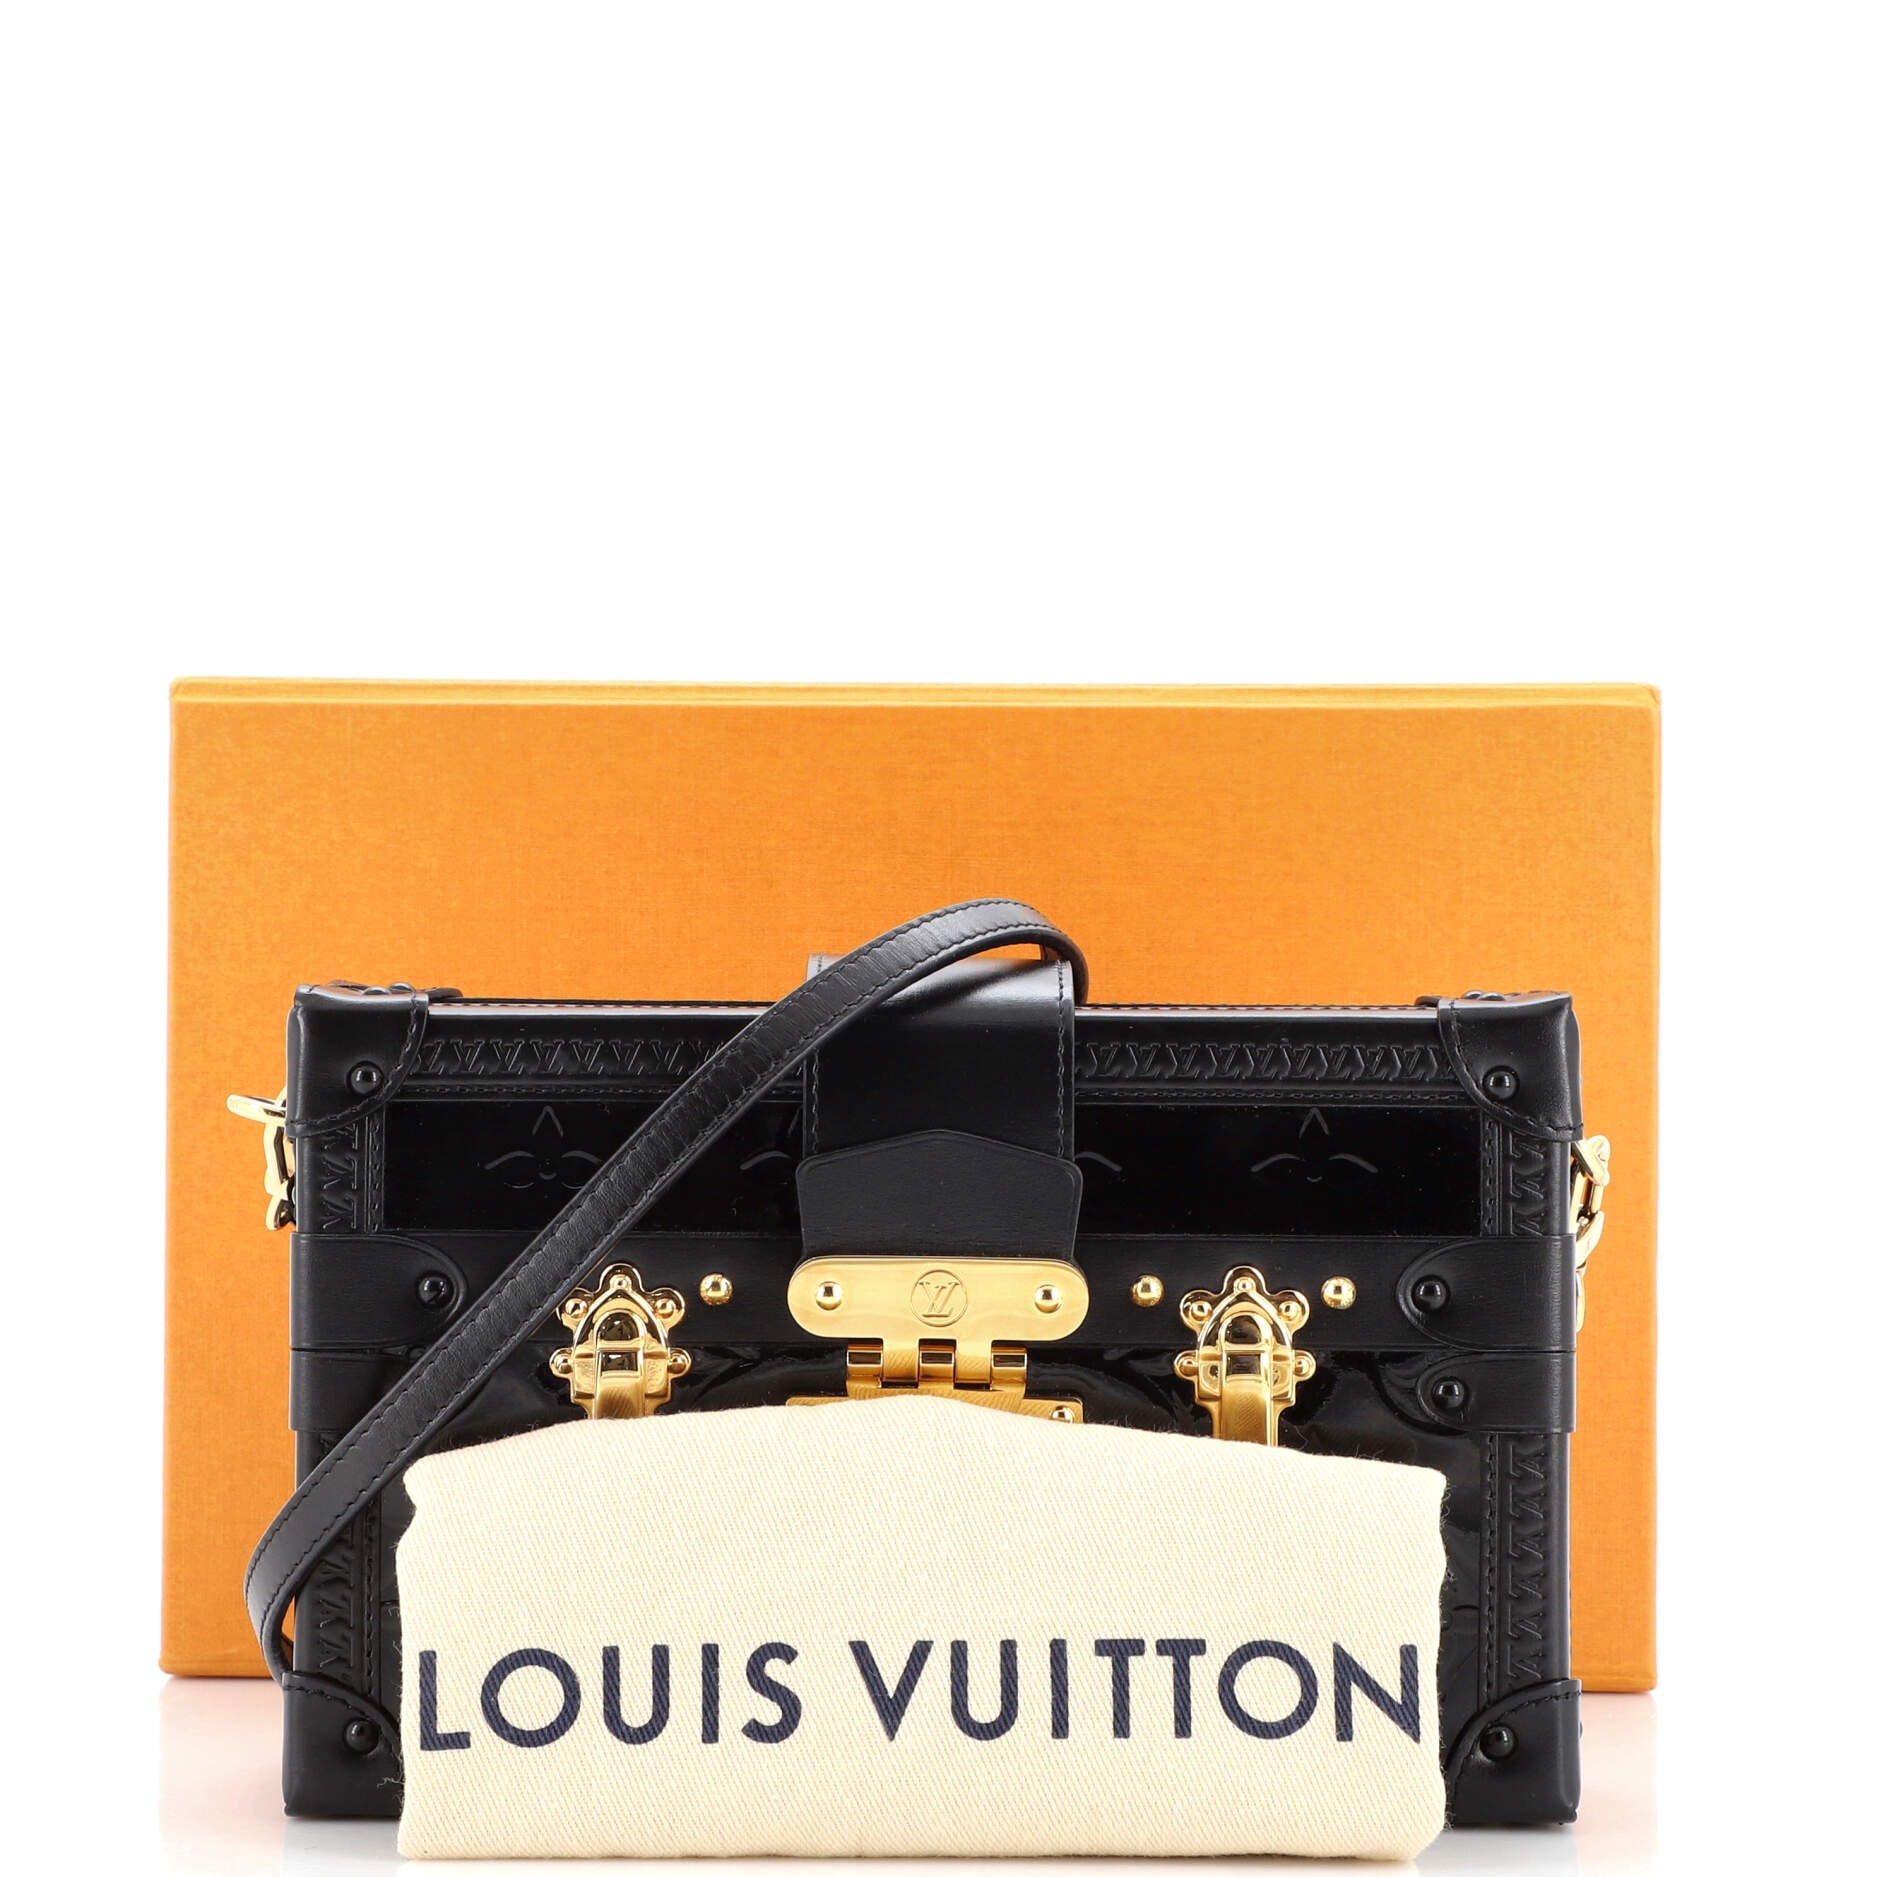 Louis Vuitton Monogram Vernis Petite Malle